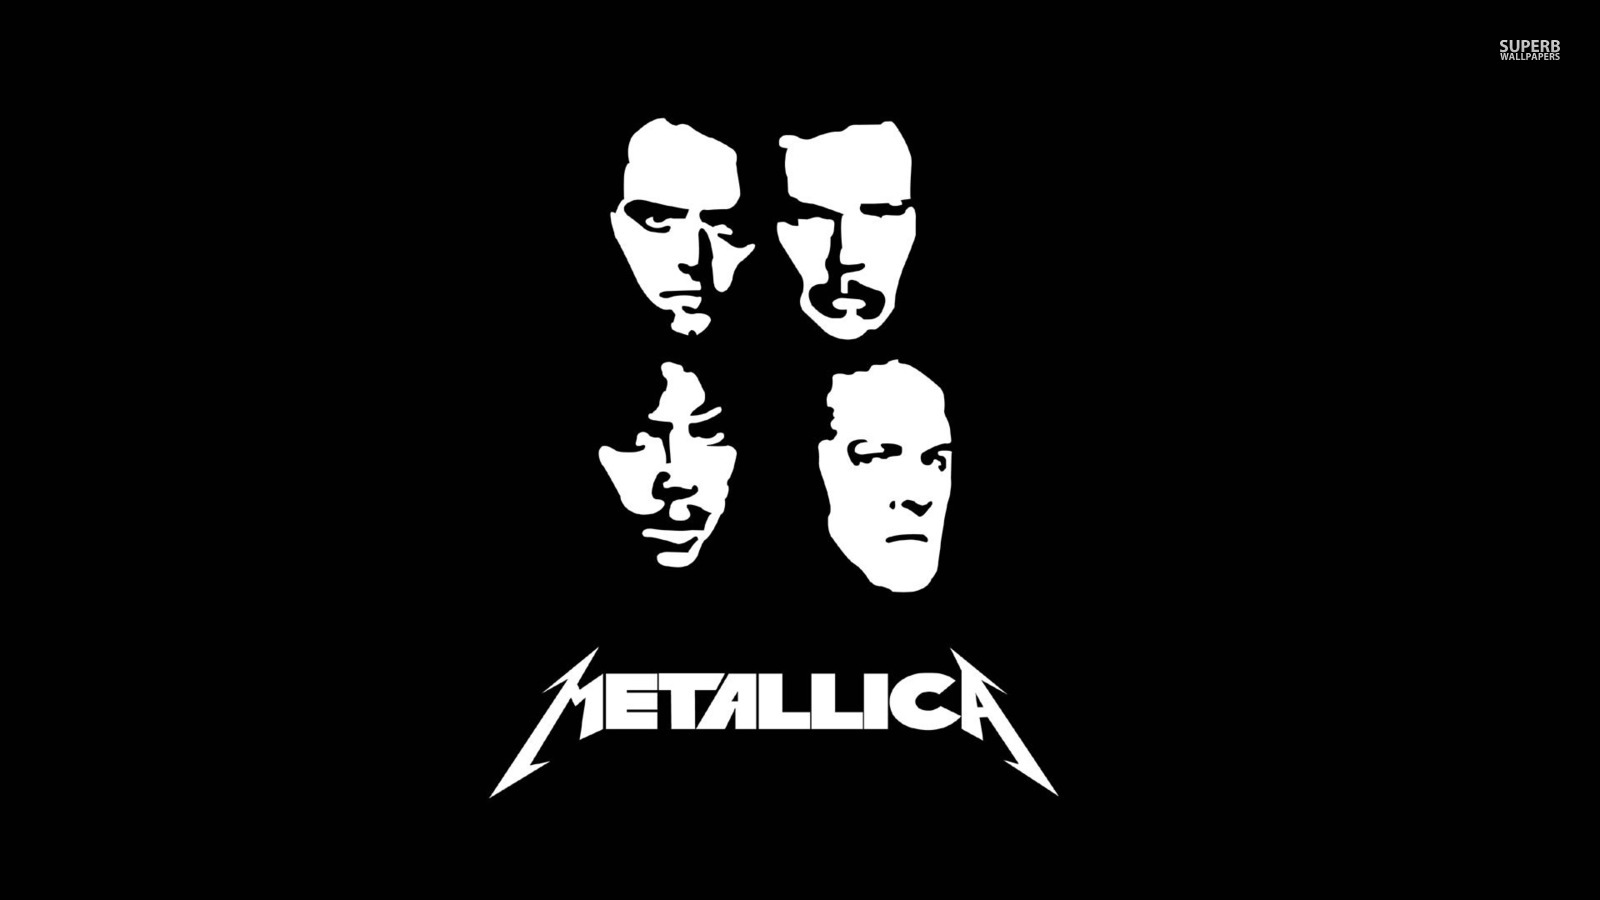 Metallica - Metallica Black And White - HD Wallpaper 